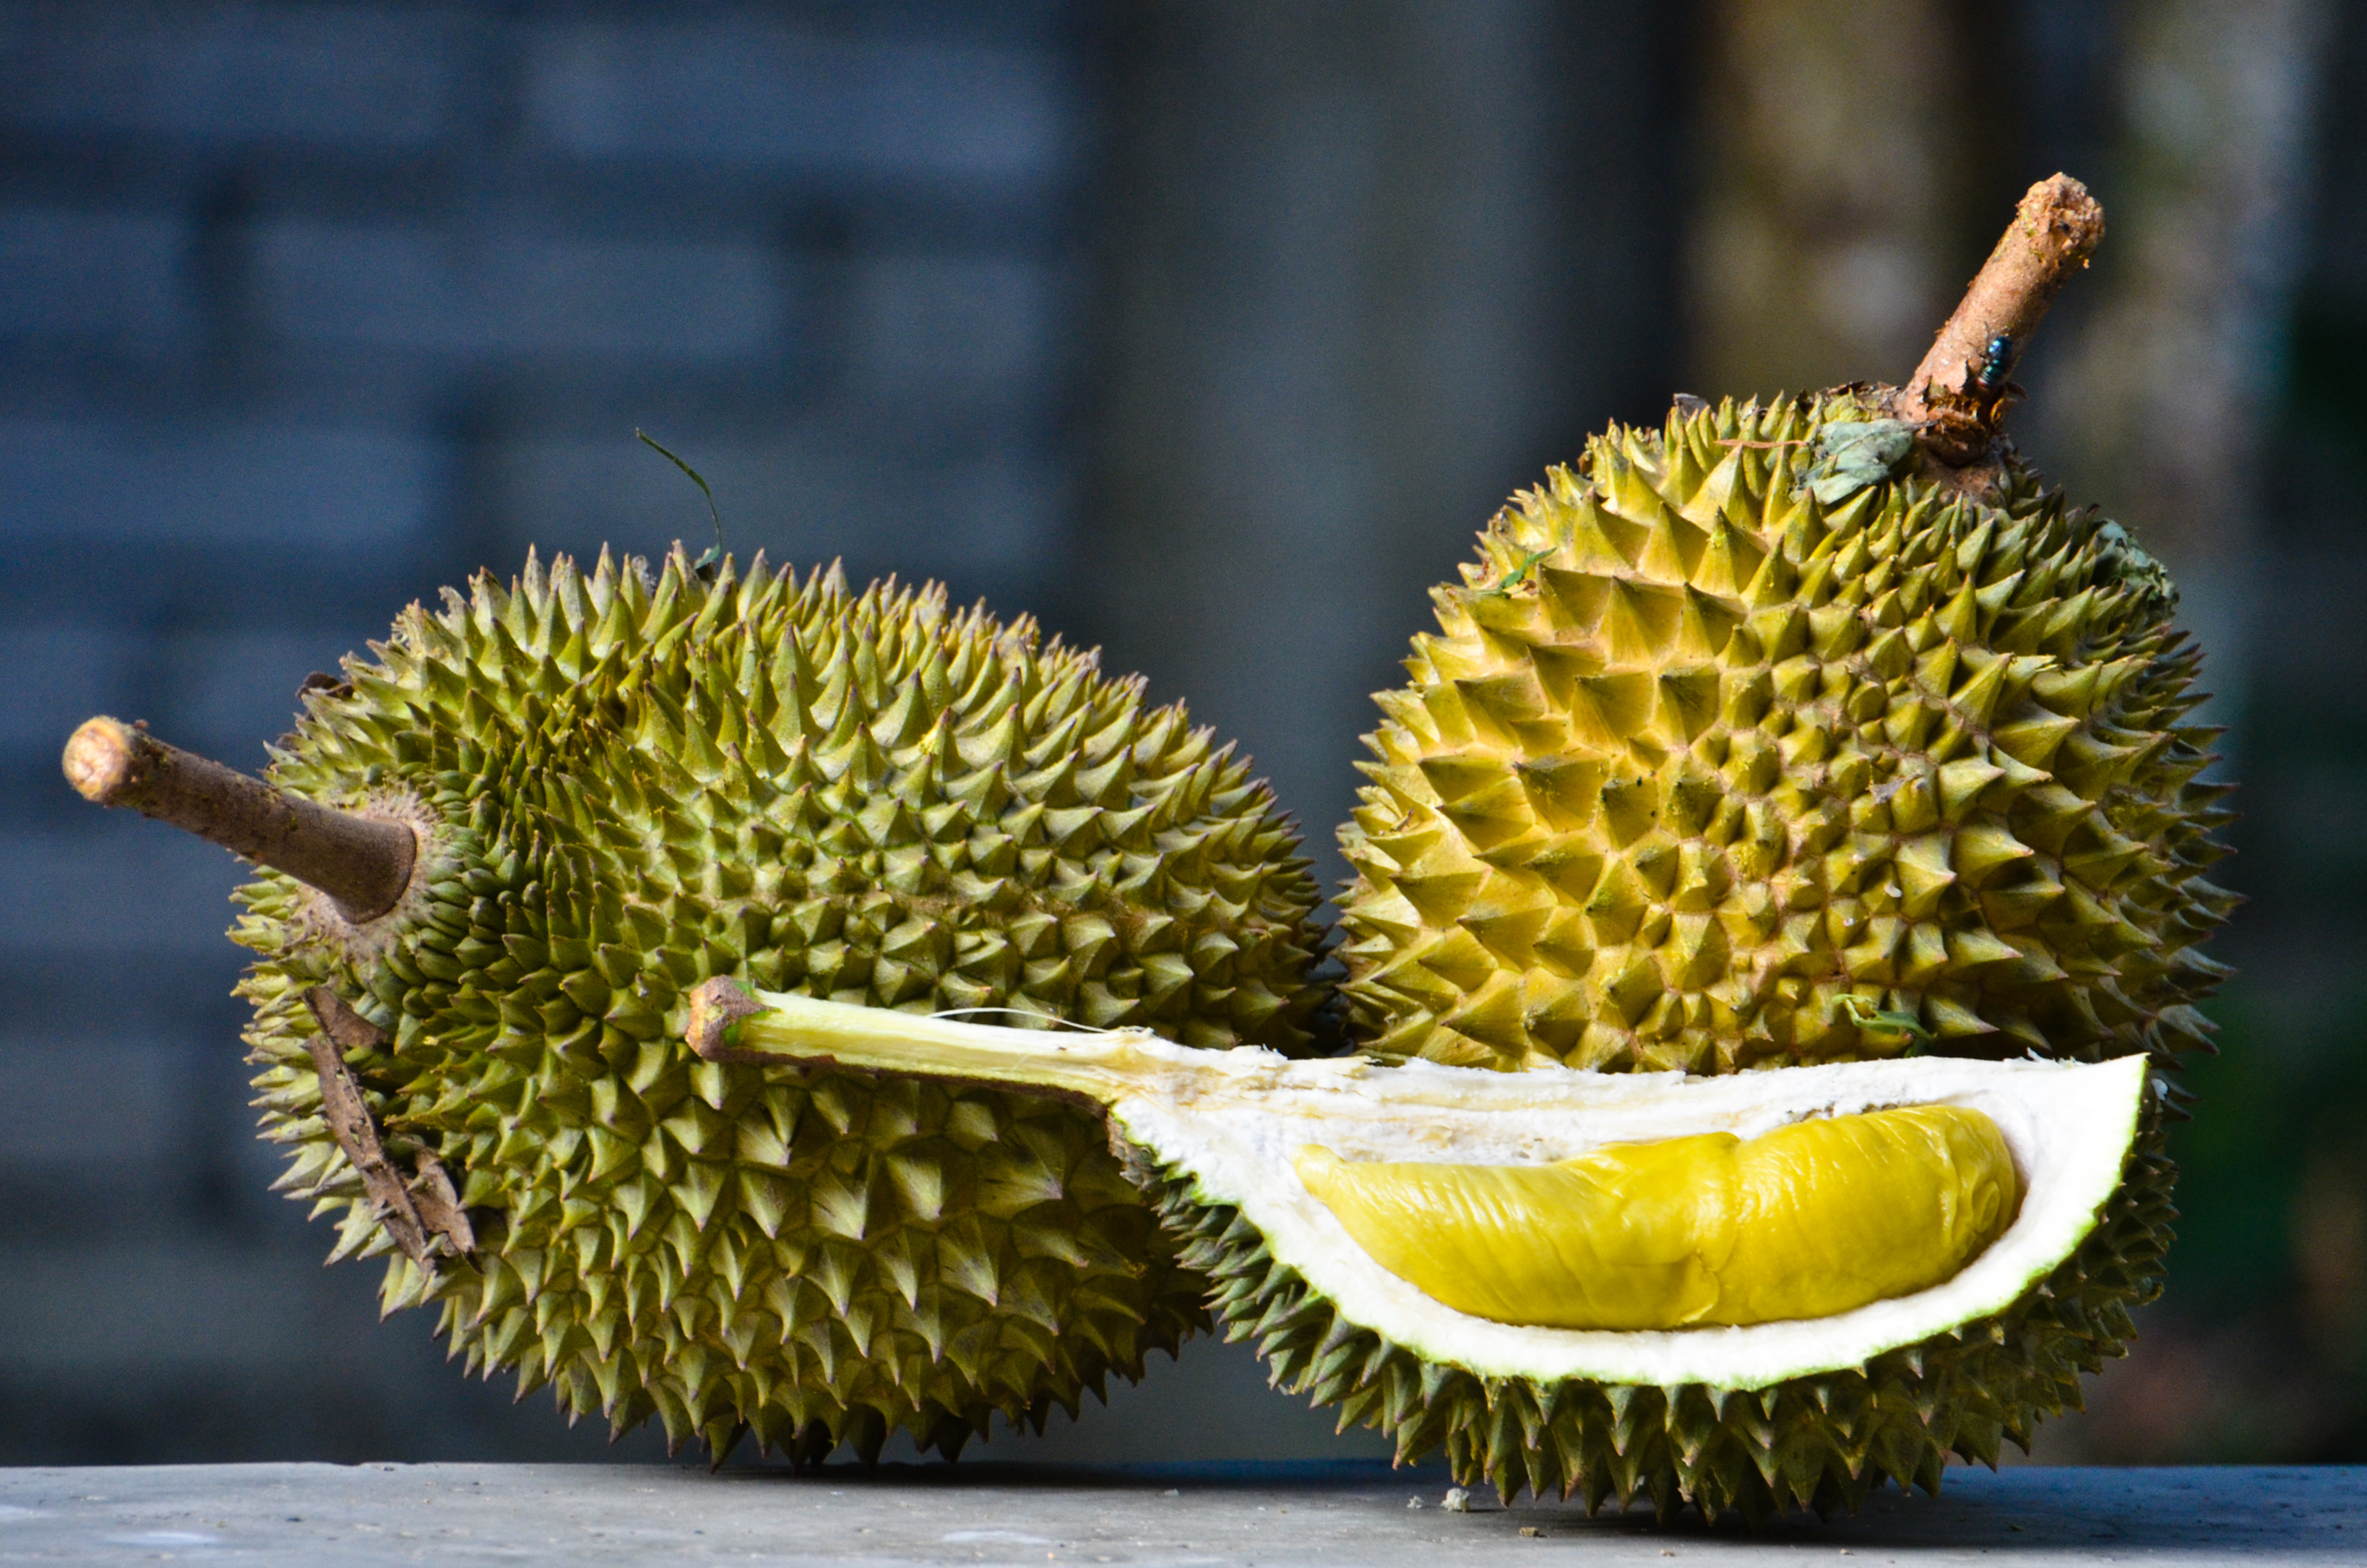 Una imagen del durian, un fruto exótico y apestoso pero exquisito, según cuentan quienes lo probaron.